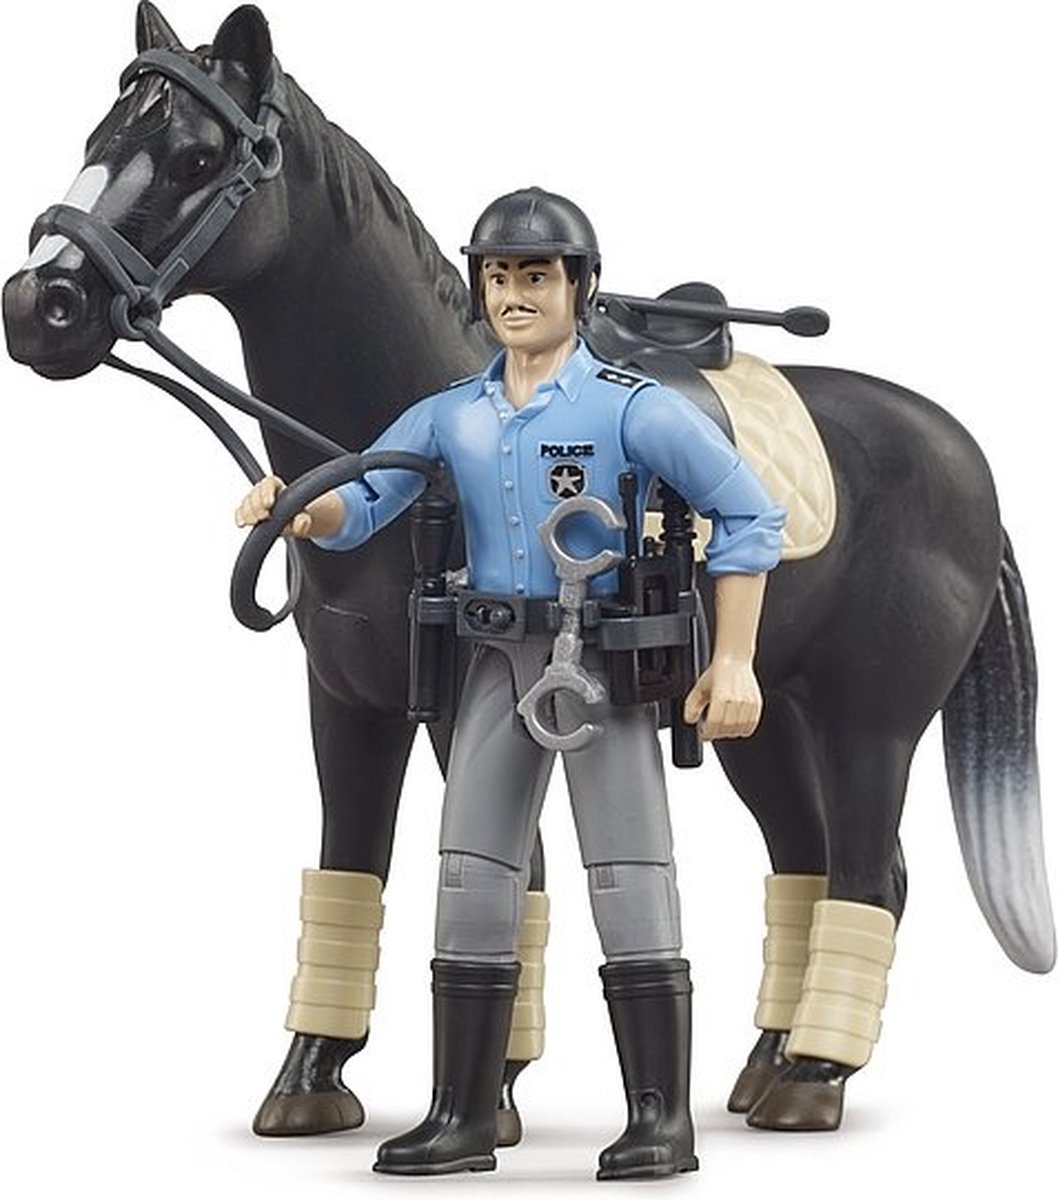 BRUDER Policier avec cheval,BRU62507 échelle1/16,BRUDER 